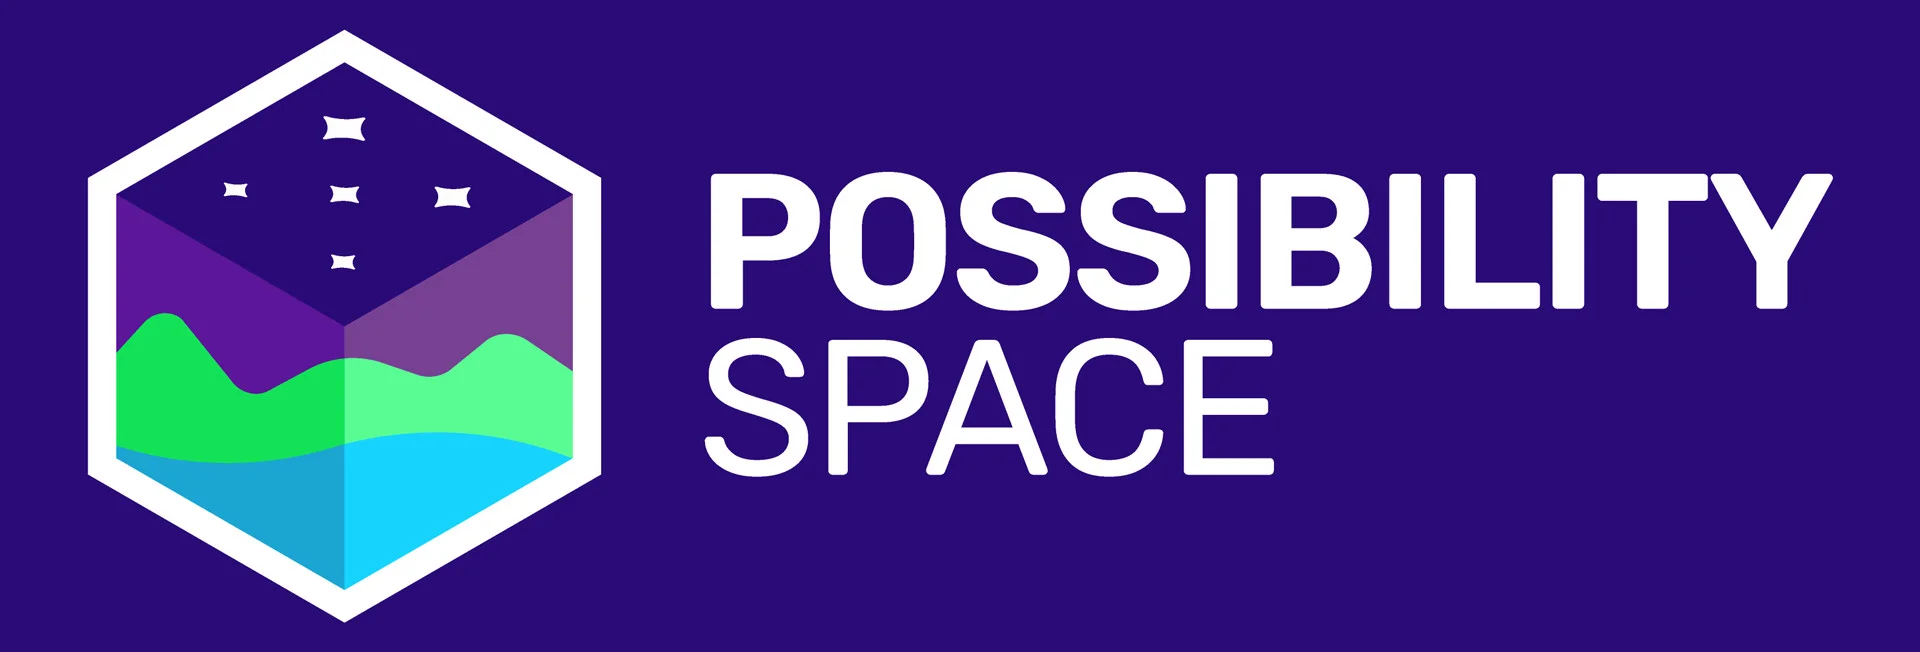 Ветераны Valve, Ubisoft, Double Fine и EA основали новую студию Possibility Space - фото 1